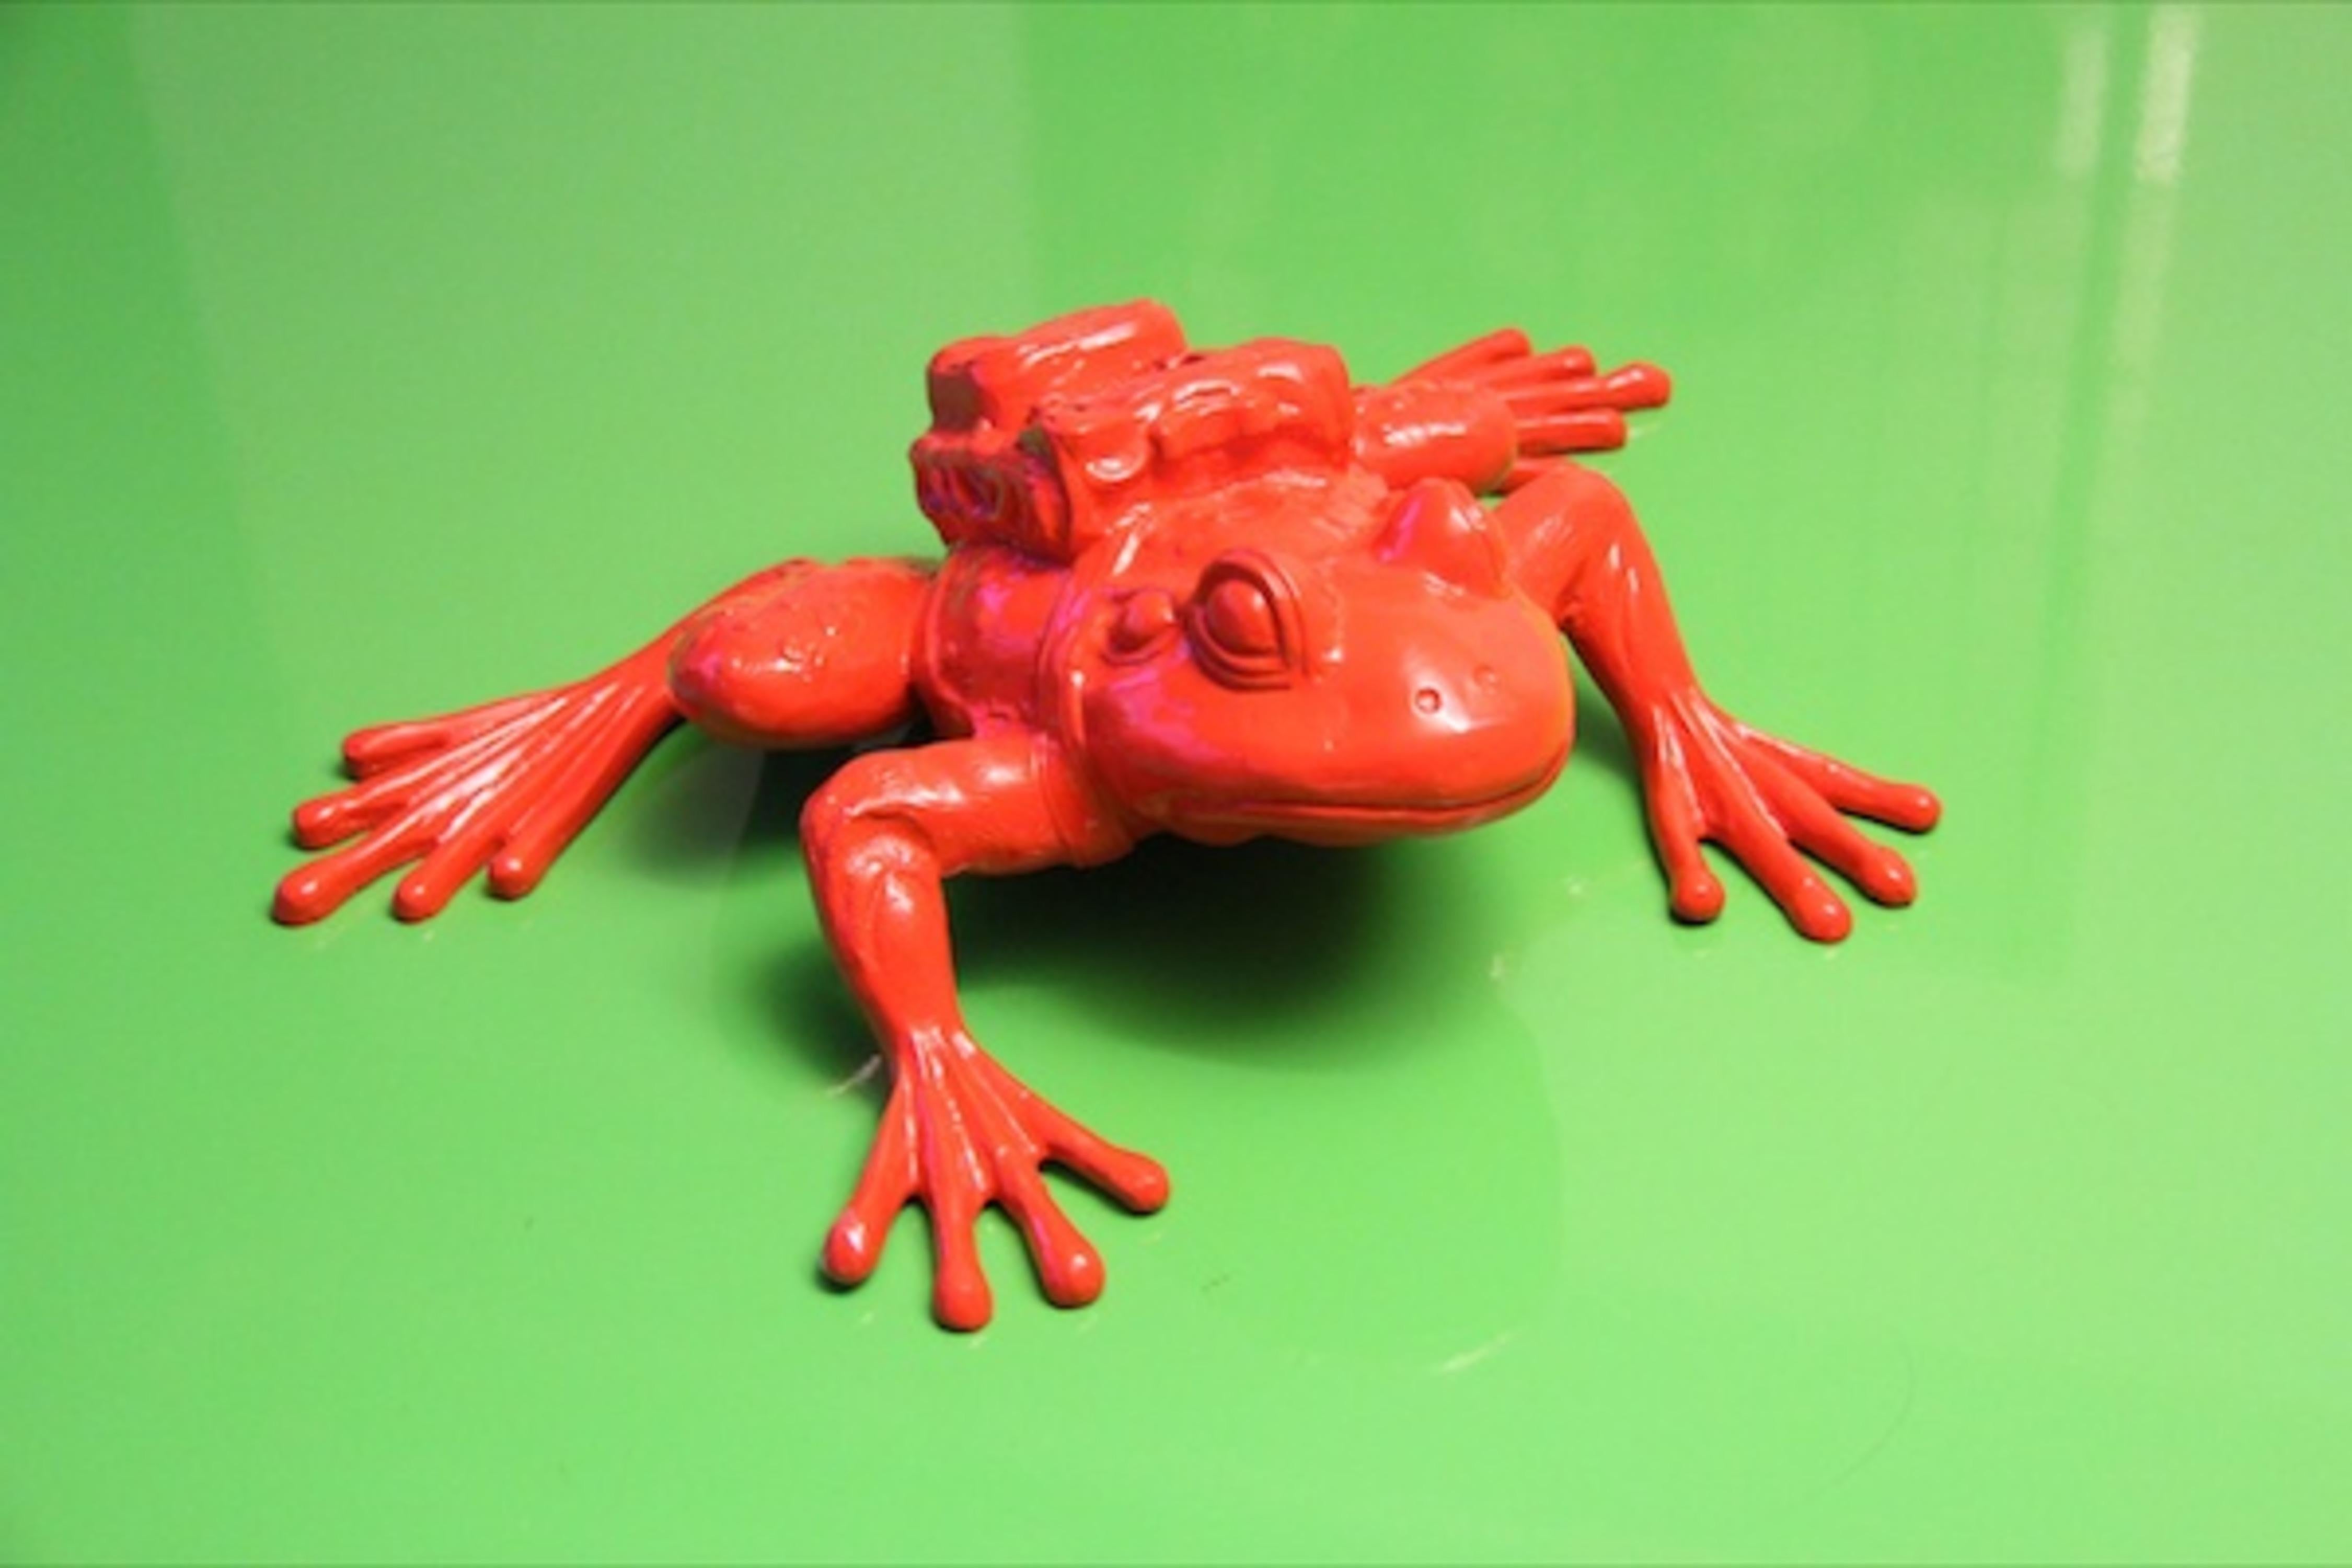 FROG rouge clouté avec sac à dos - Sculpture de William Sweetlove